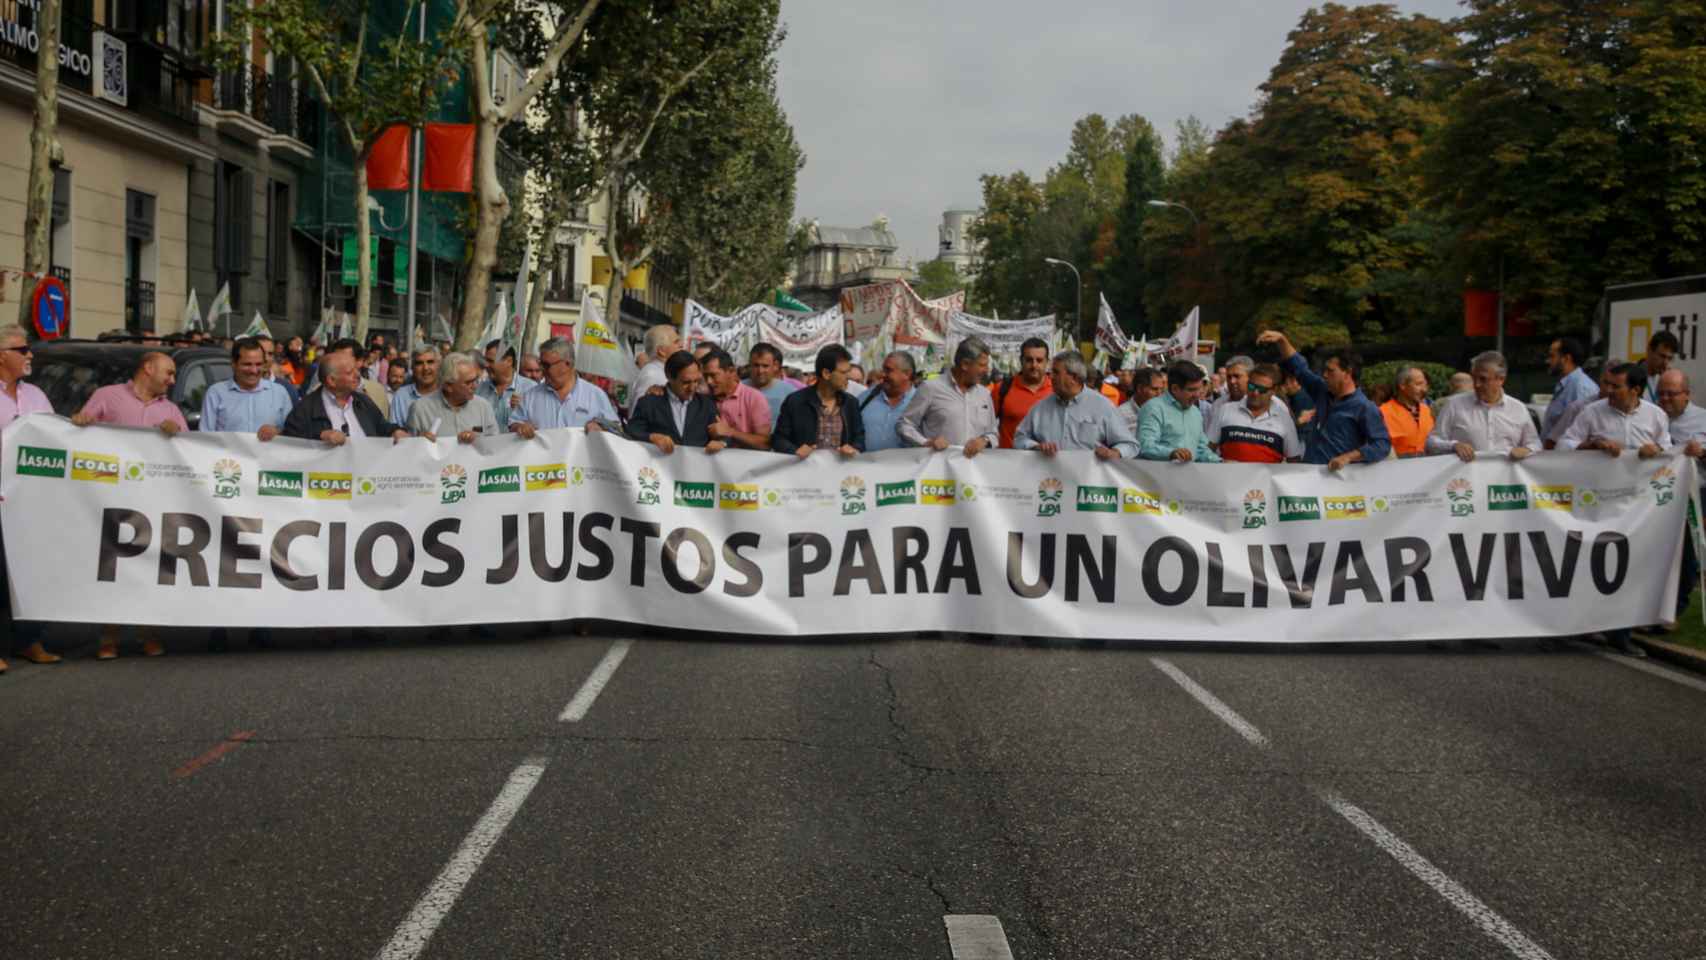 Manifestación en defensa del olivar tradicional ante la crítica situación que atraviesa el sector por los bajos precios en origen del aceite de oliva, en Madrid.